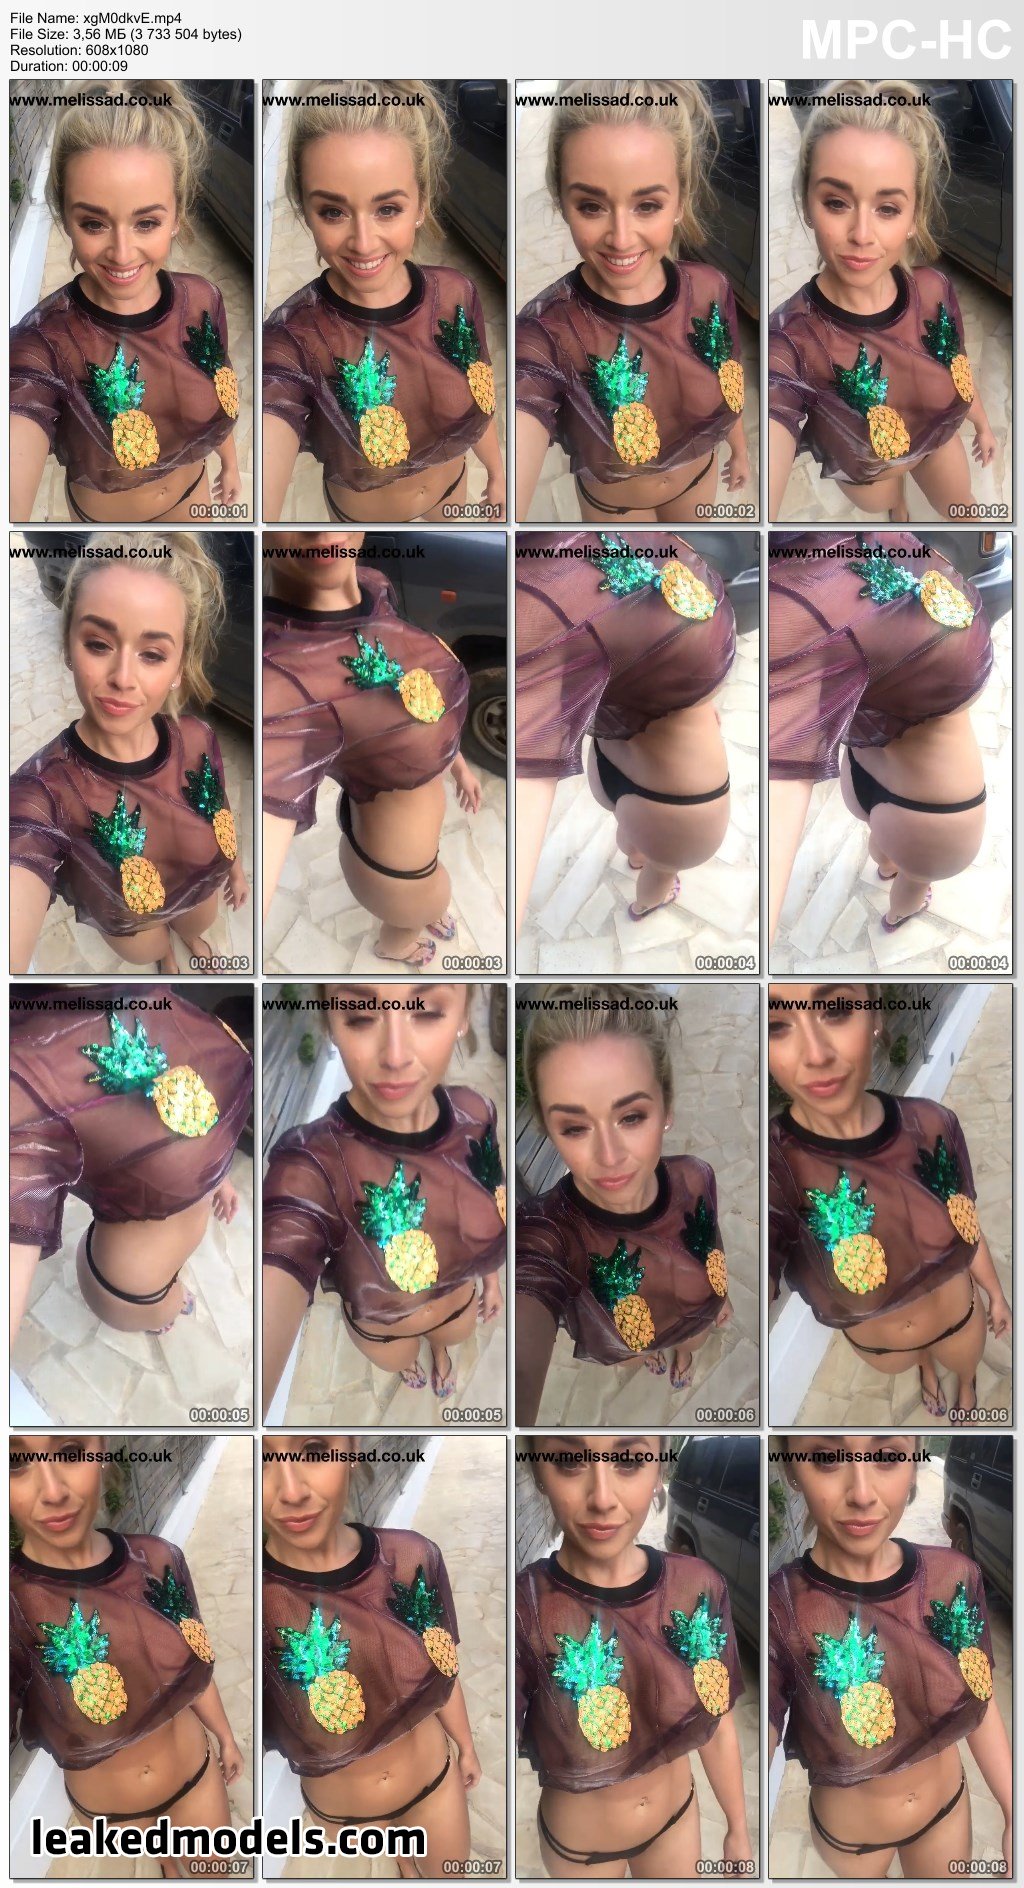 Melissa Debling Instagram Nude Leaks (27 Photos)